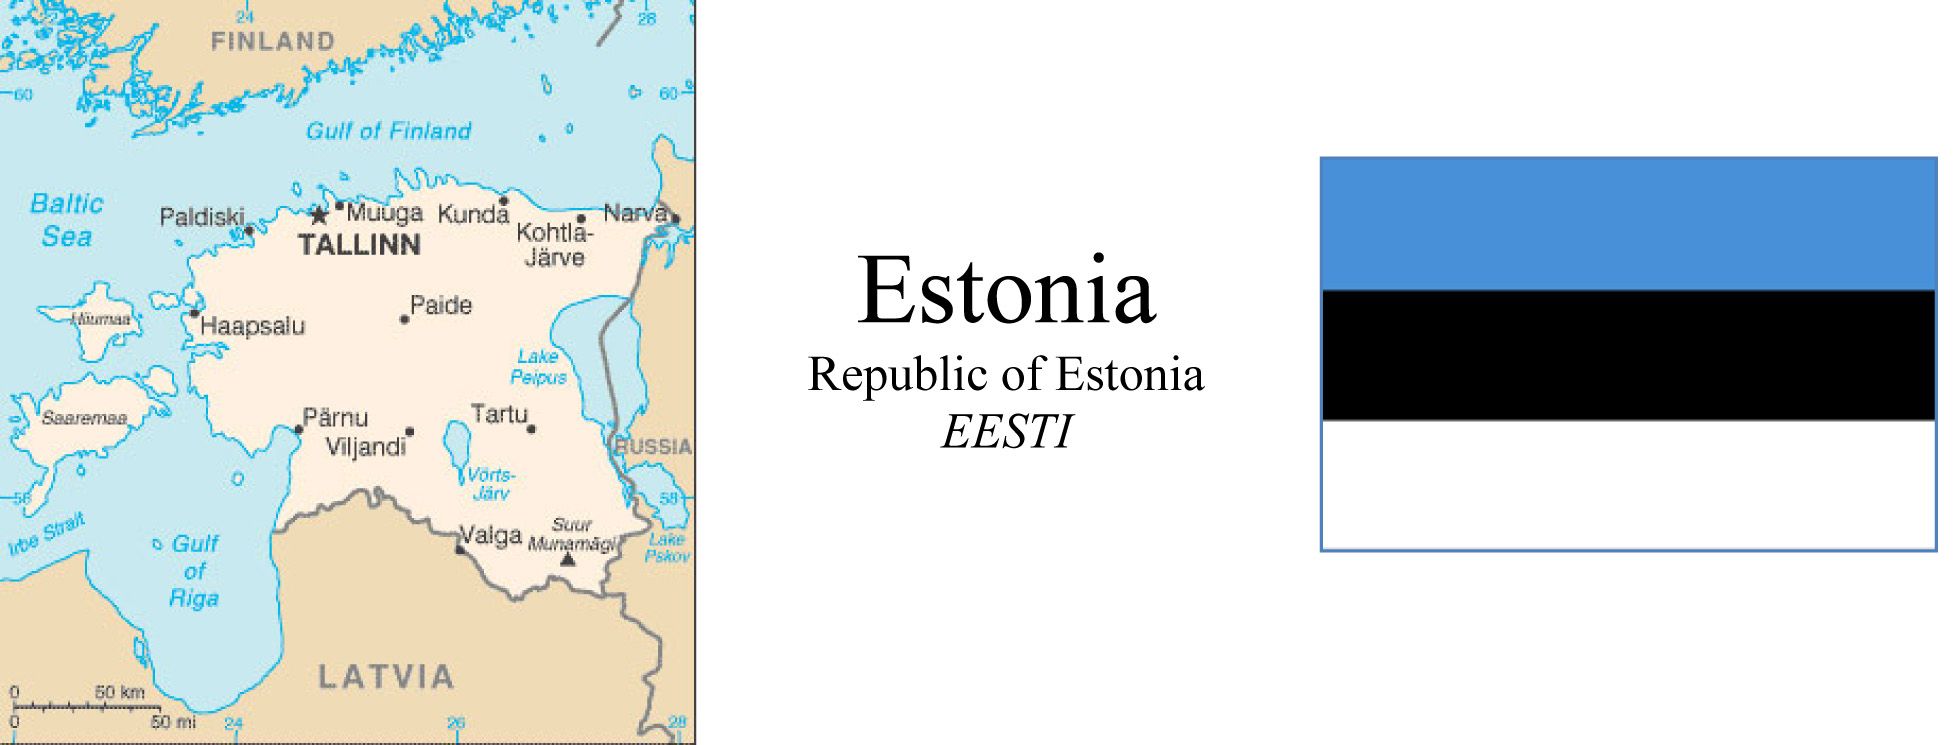 Estonia Map & Flag